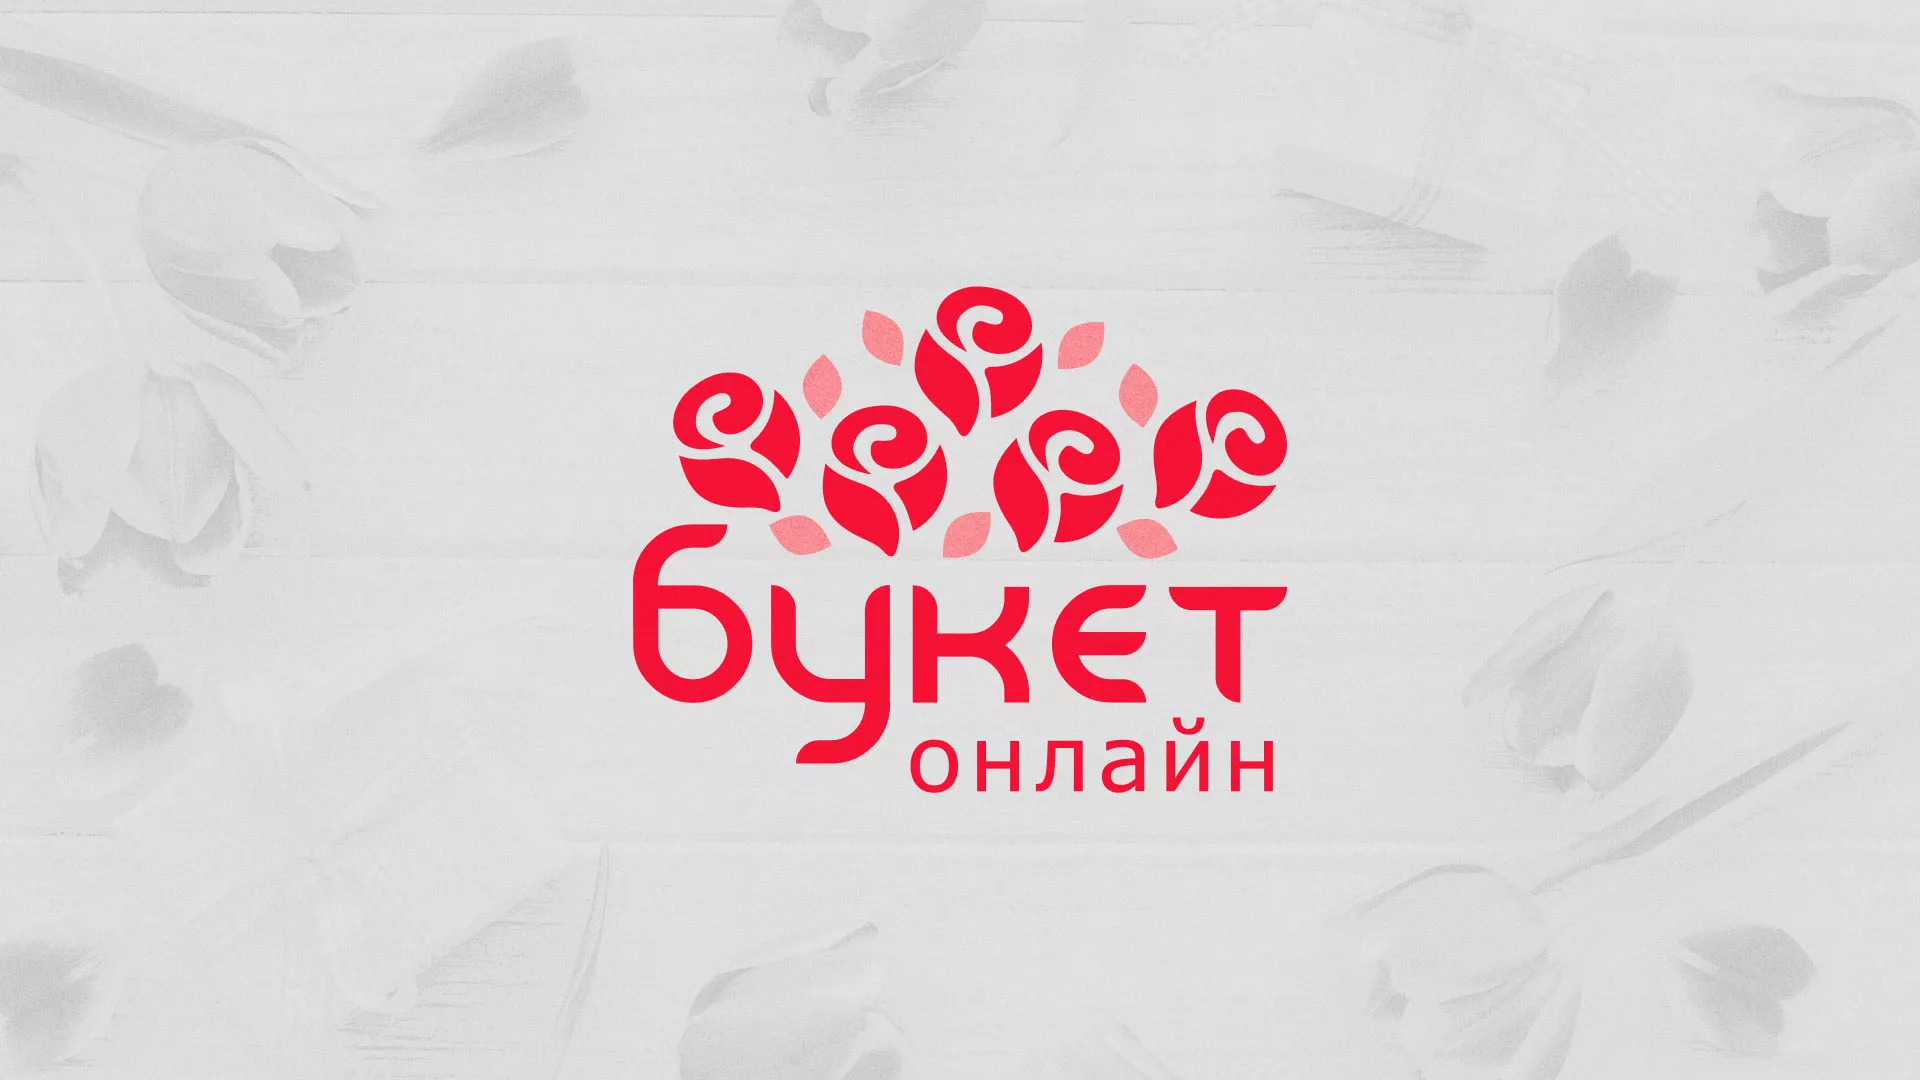 Создание интернет-магазина «Букет-онлайн» по цветам в Починке